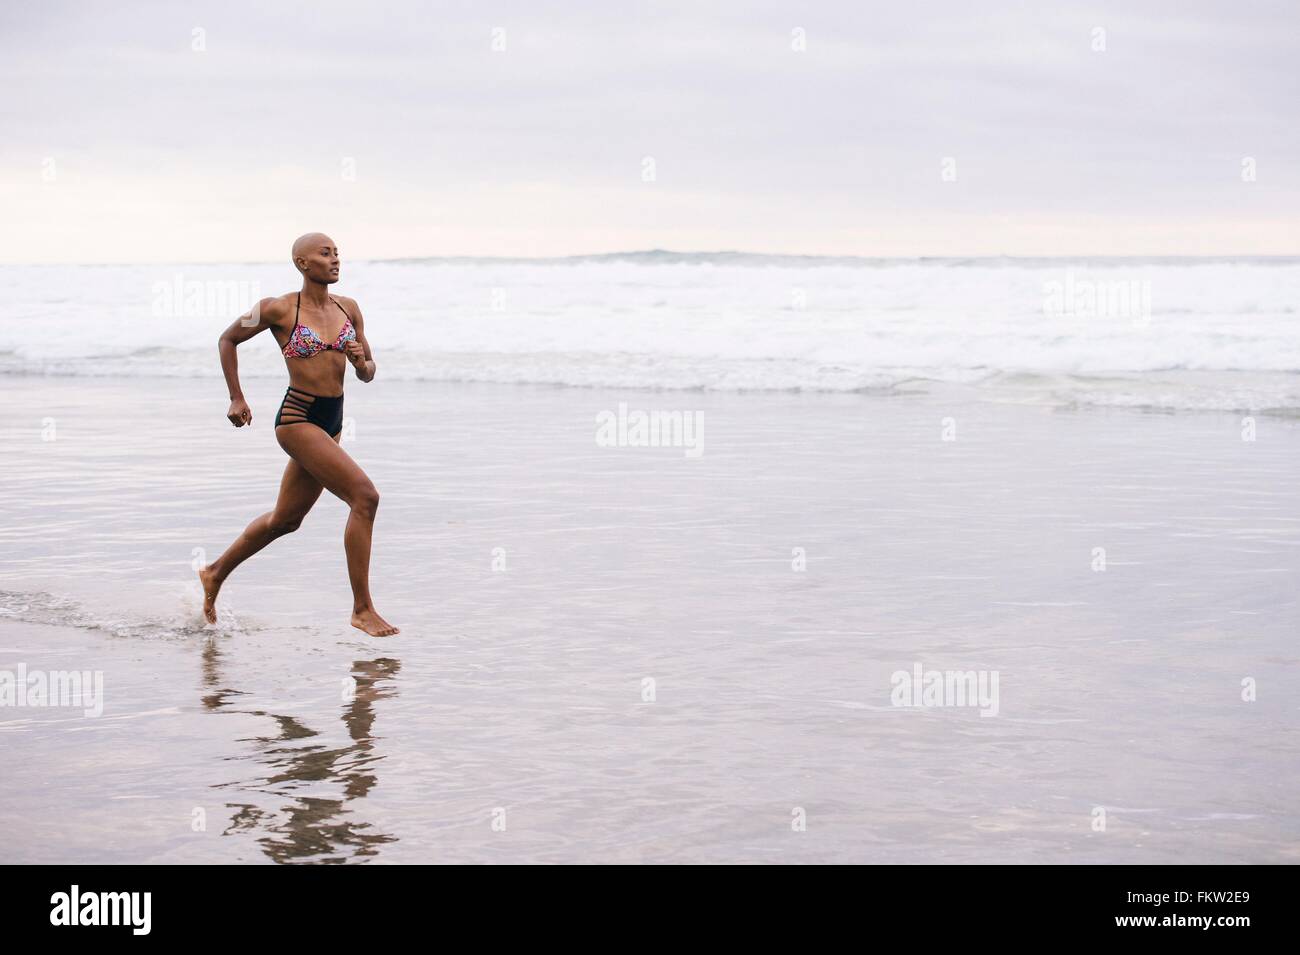 Woman in bikini jogging on beach Stock Photo